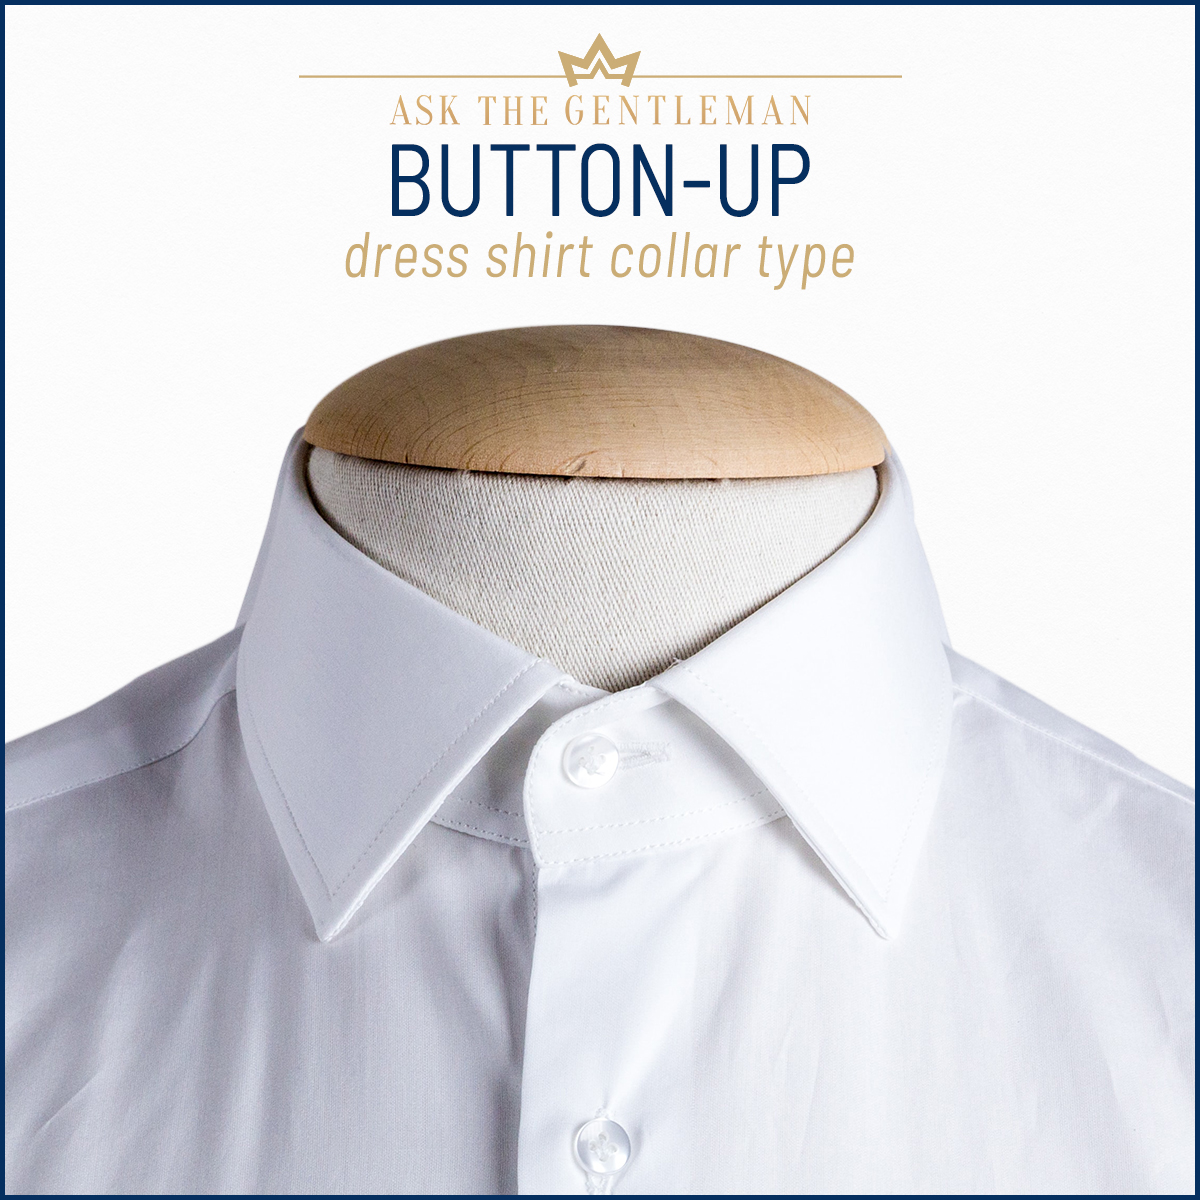 Button-up dress shirt collar type